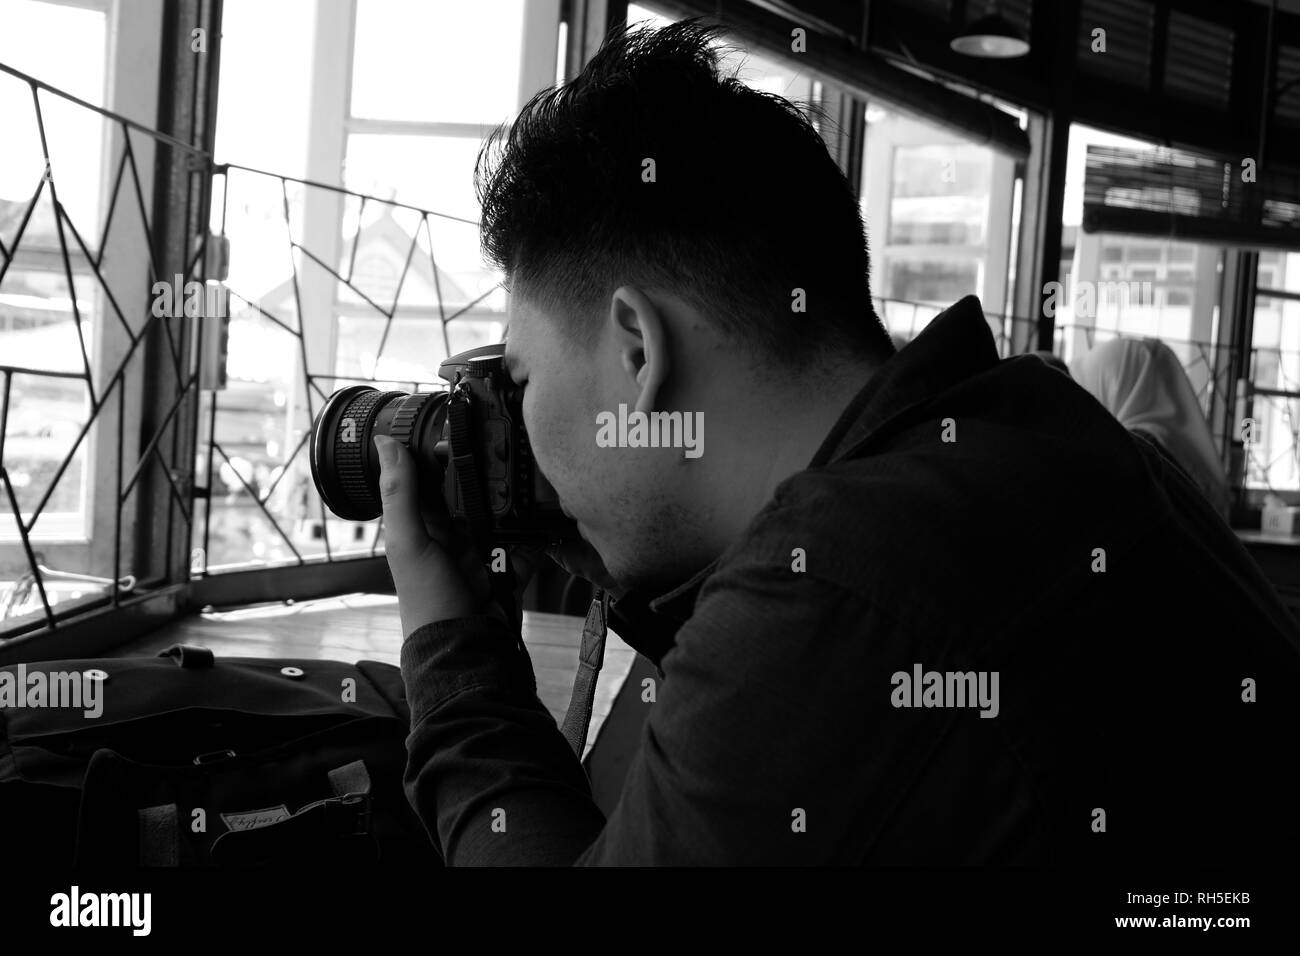 Man taking photo avec l'appareil photo en noir et blanc Banque D'Images